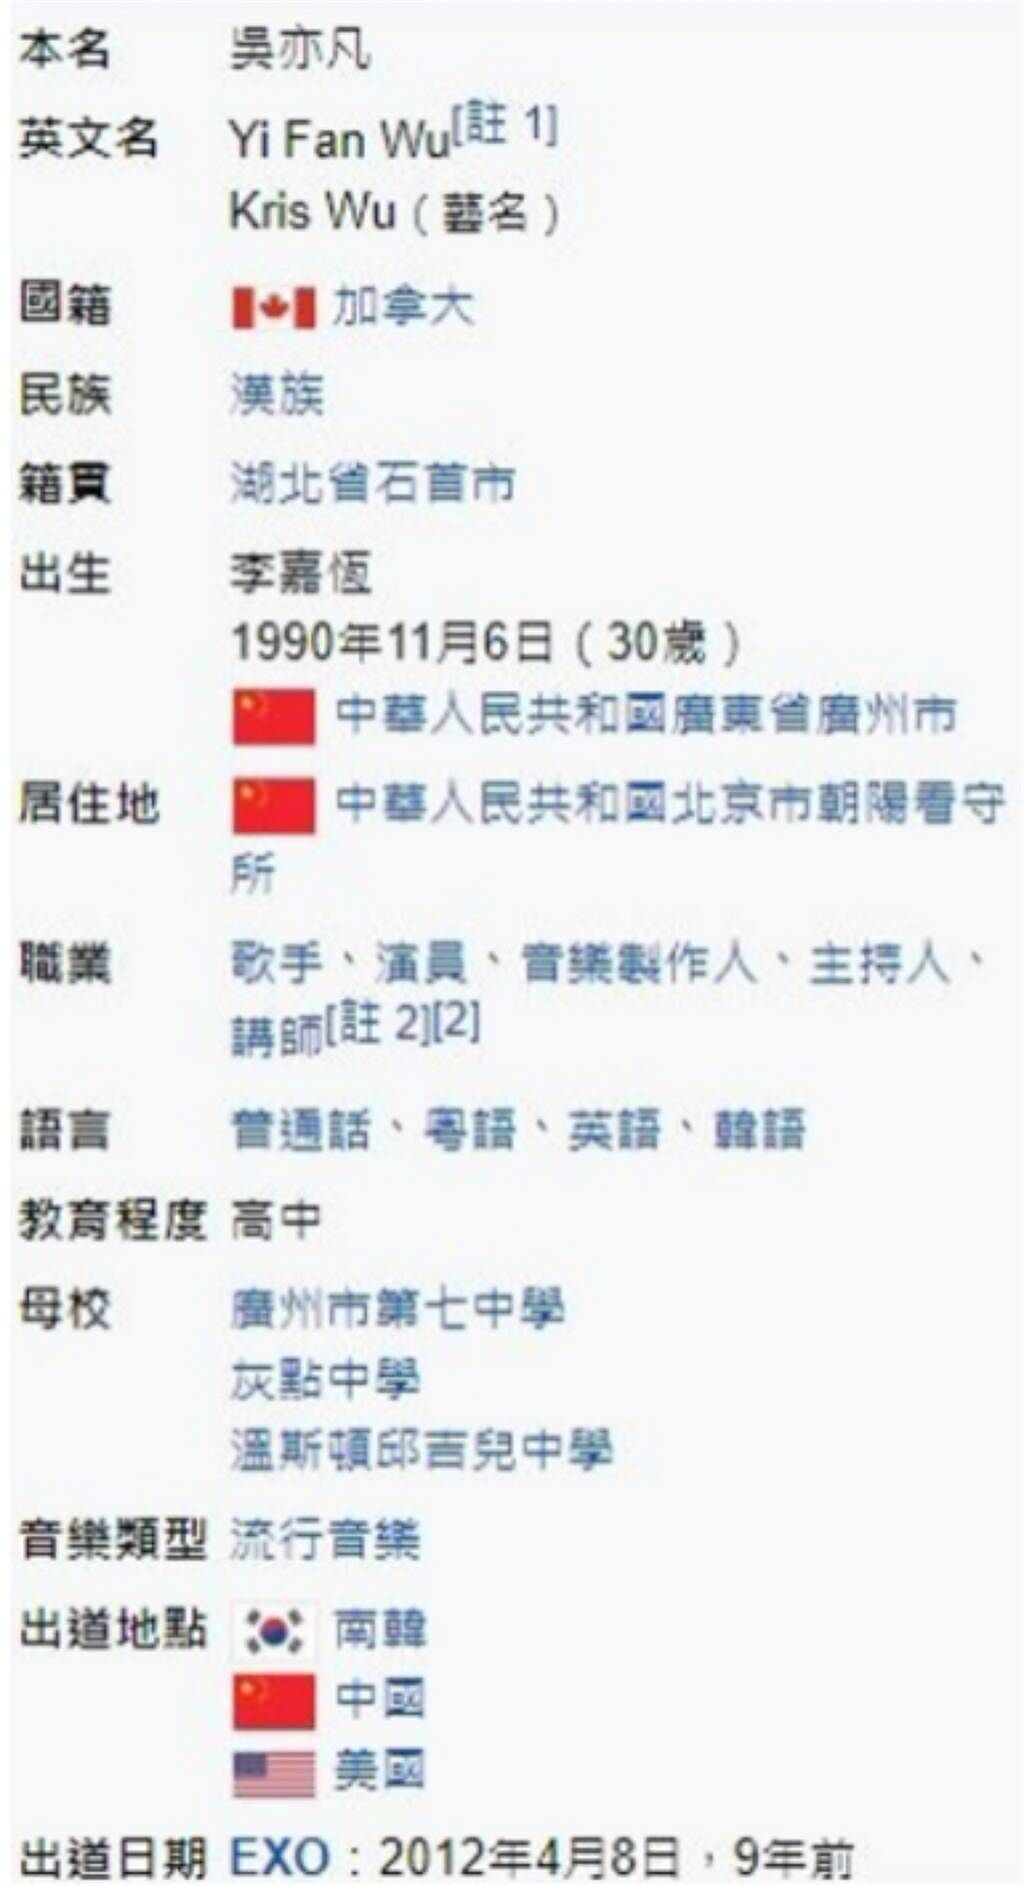 吳亦凡在維基百科上的資料，居住地被惡搞成「朝陽看守所」。(圖/ 摘自維基百科)